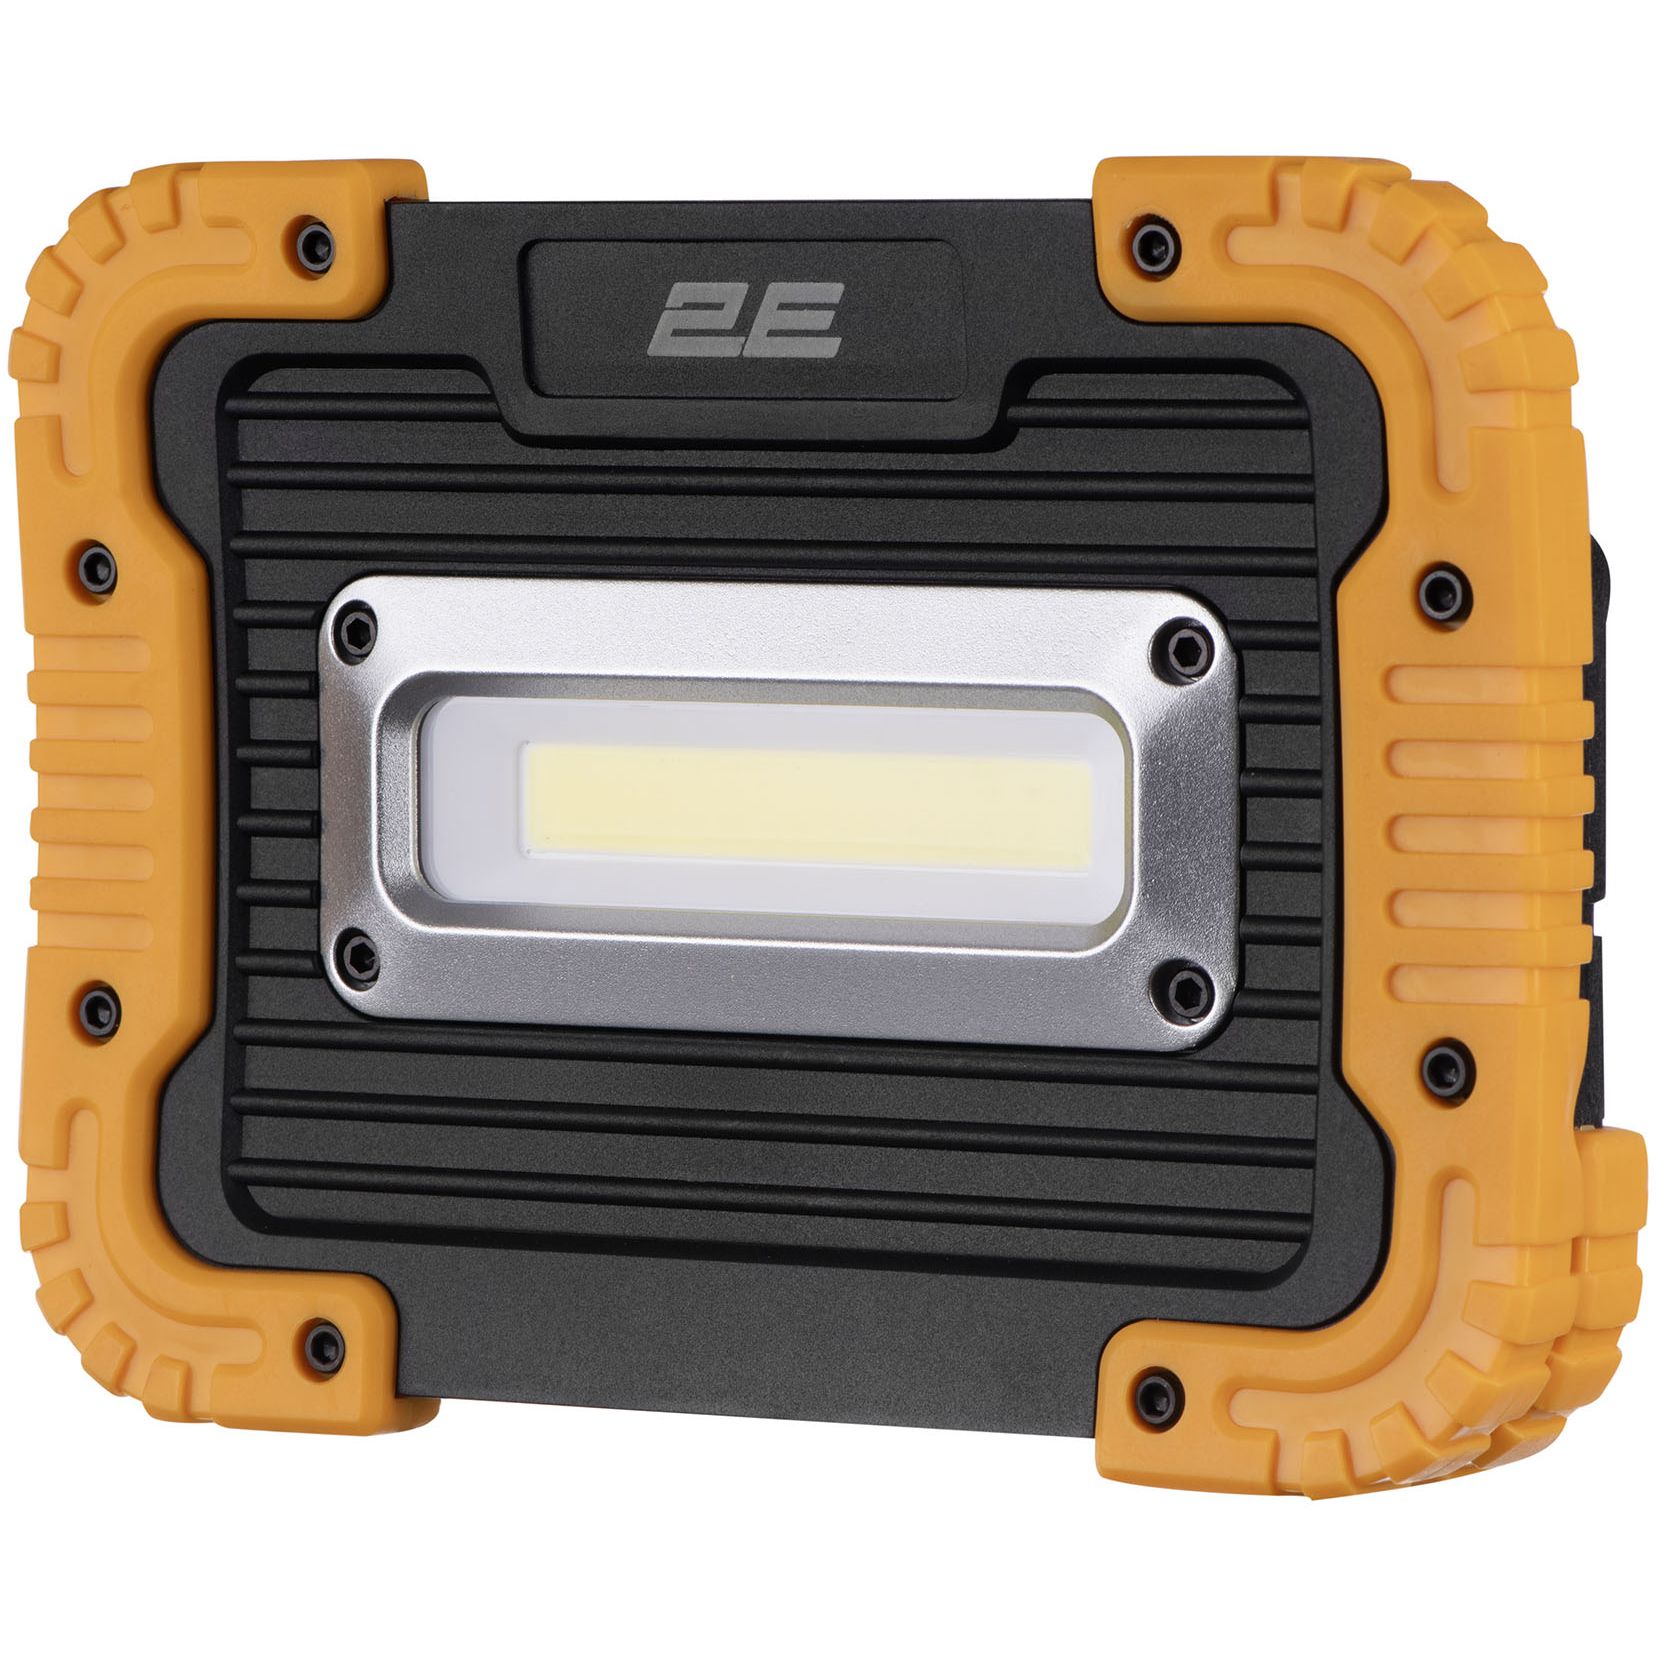 Прожектор акумуляторний 2E Comfort Home 4400 мА/год 3 функції освітлення (2E-WLBL1844) - фото 2